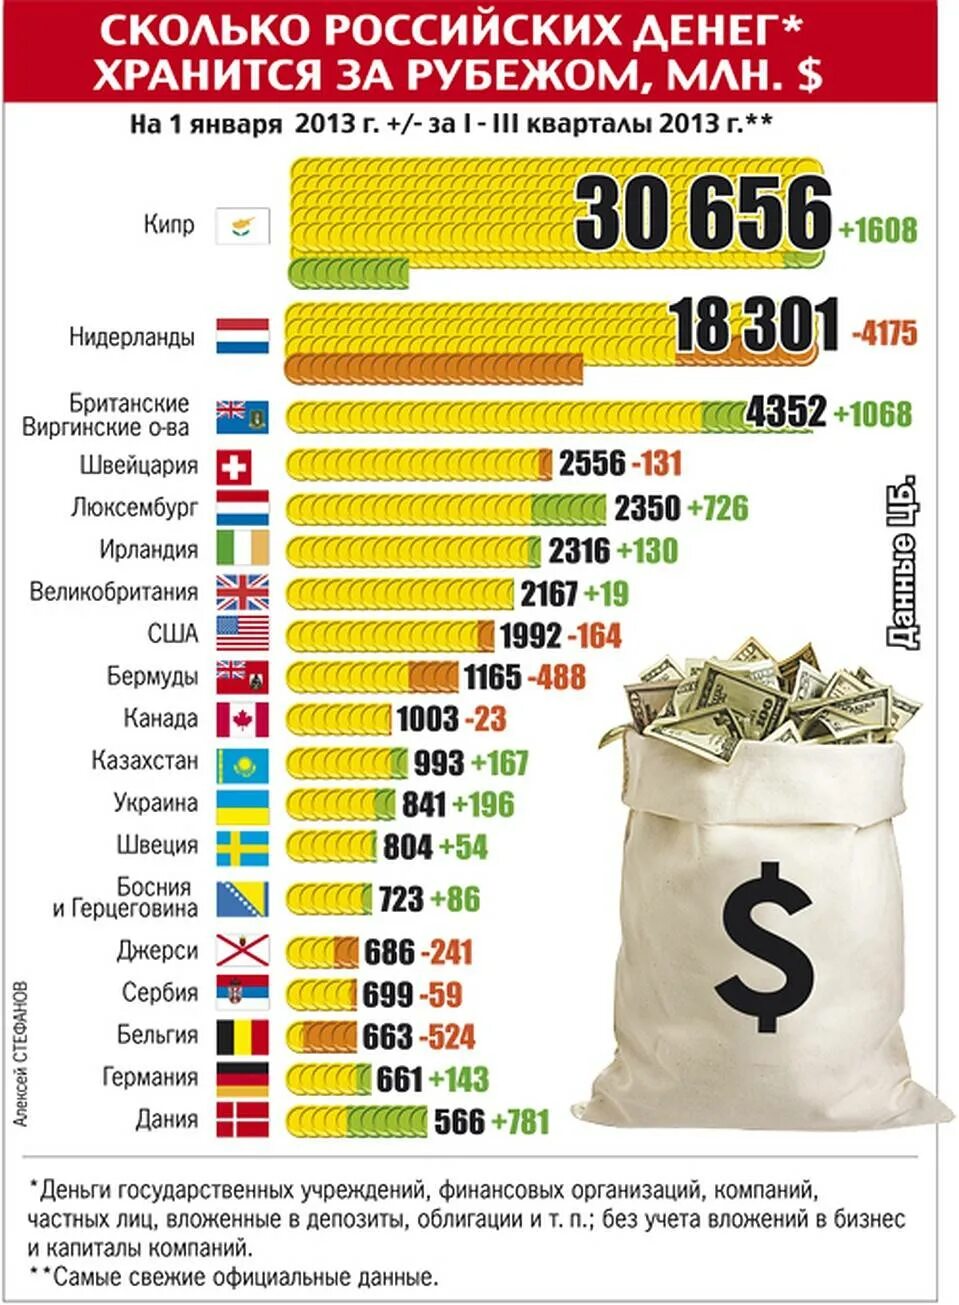 Сумма денег в россии. Сколько всего денег в мире. Сколькоьденег в России. Количество денег в странах. Сколько денег в России.